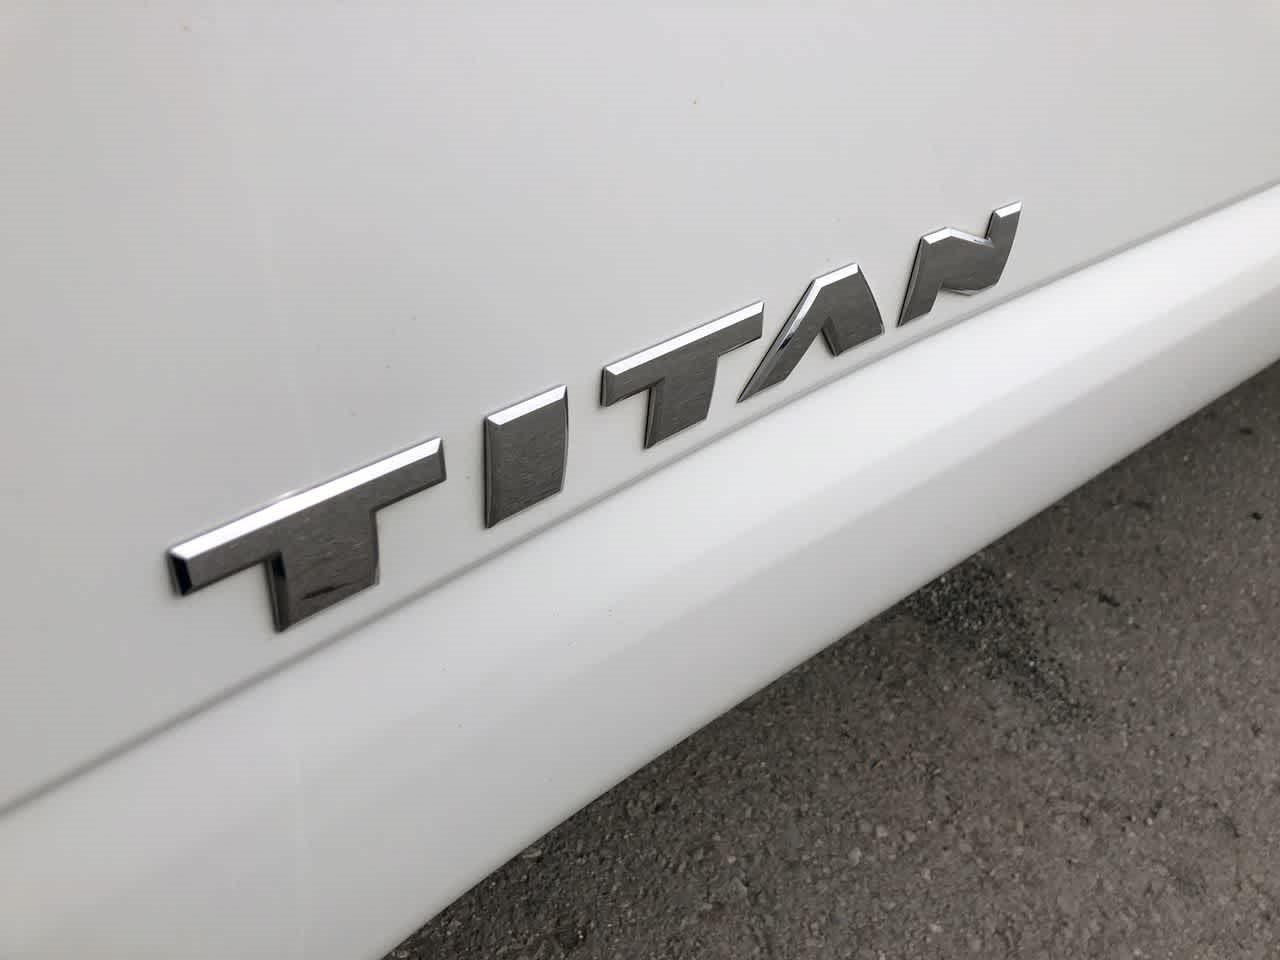 2022 Nissan Titan SV 4x4 Crew Cab